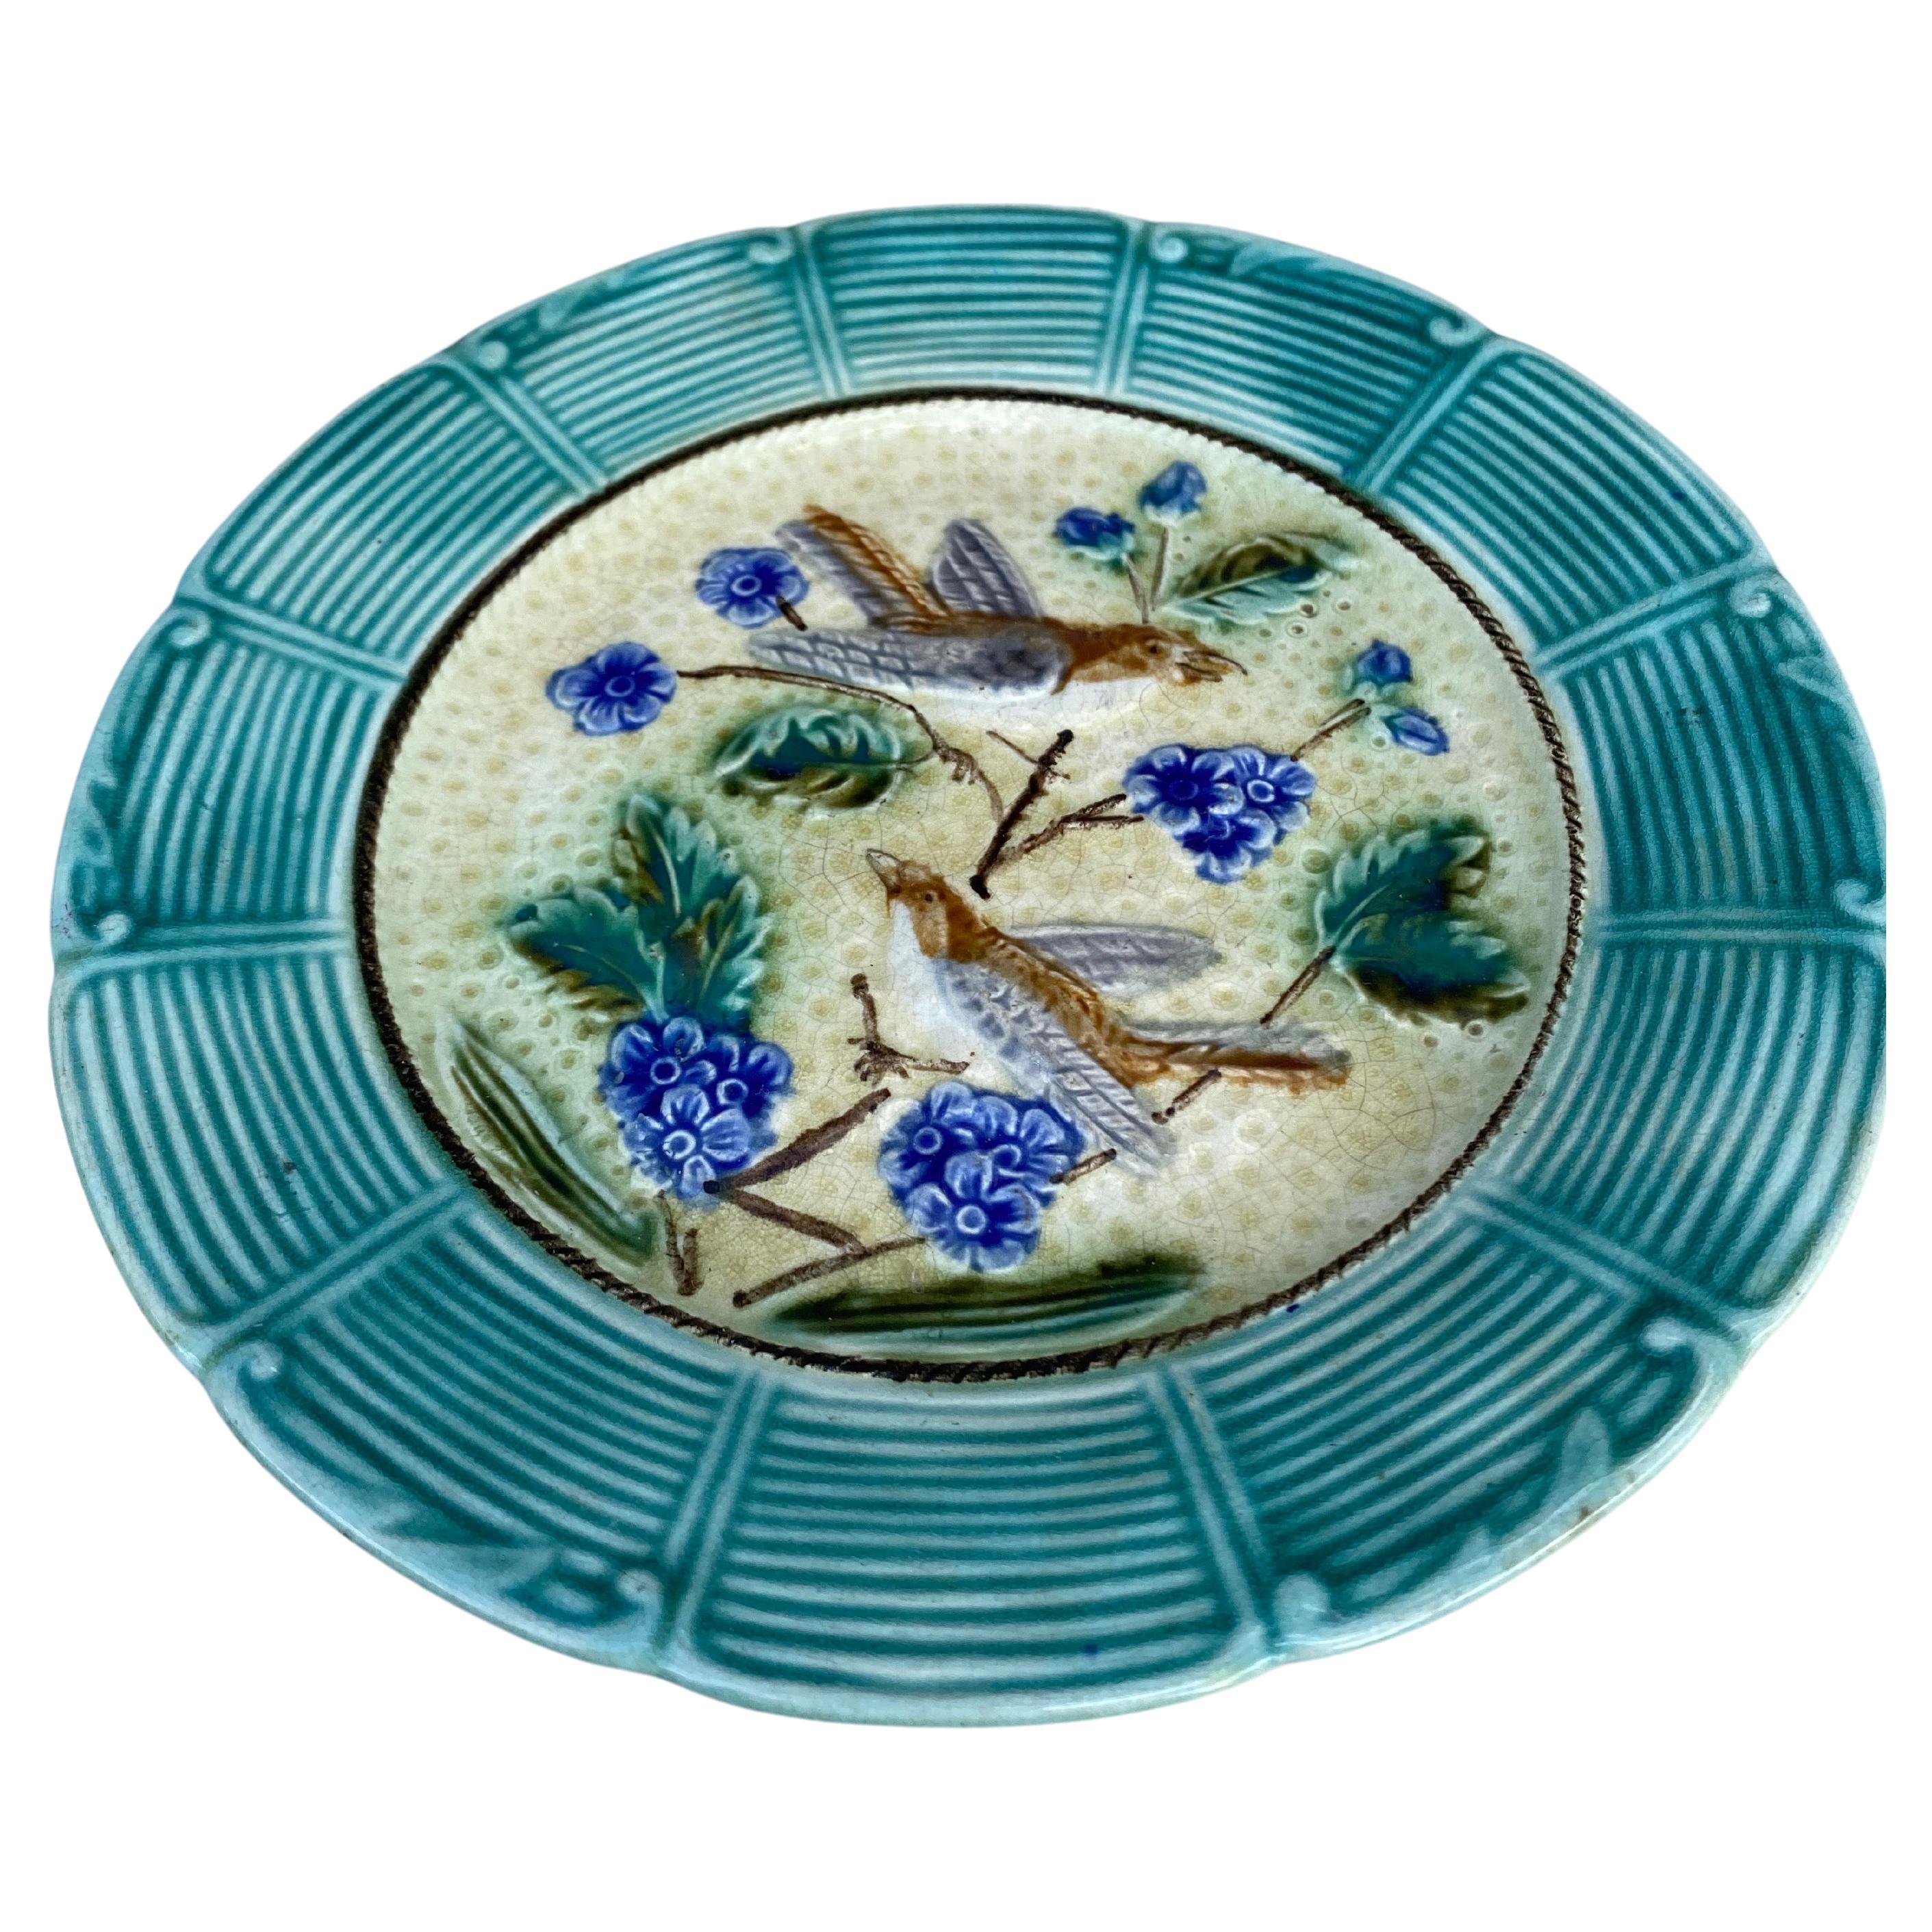 Assiette en majolique oiseaux avec fleurs bleues Onnaing, vers 1890.